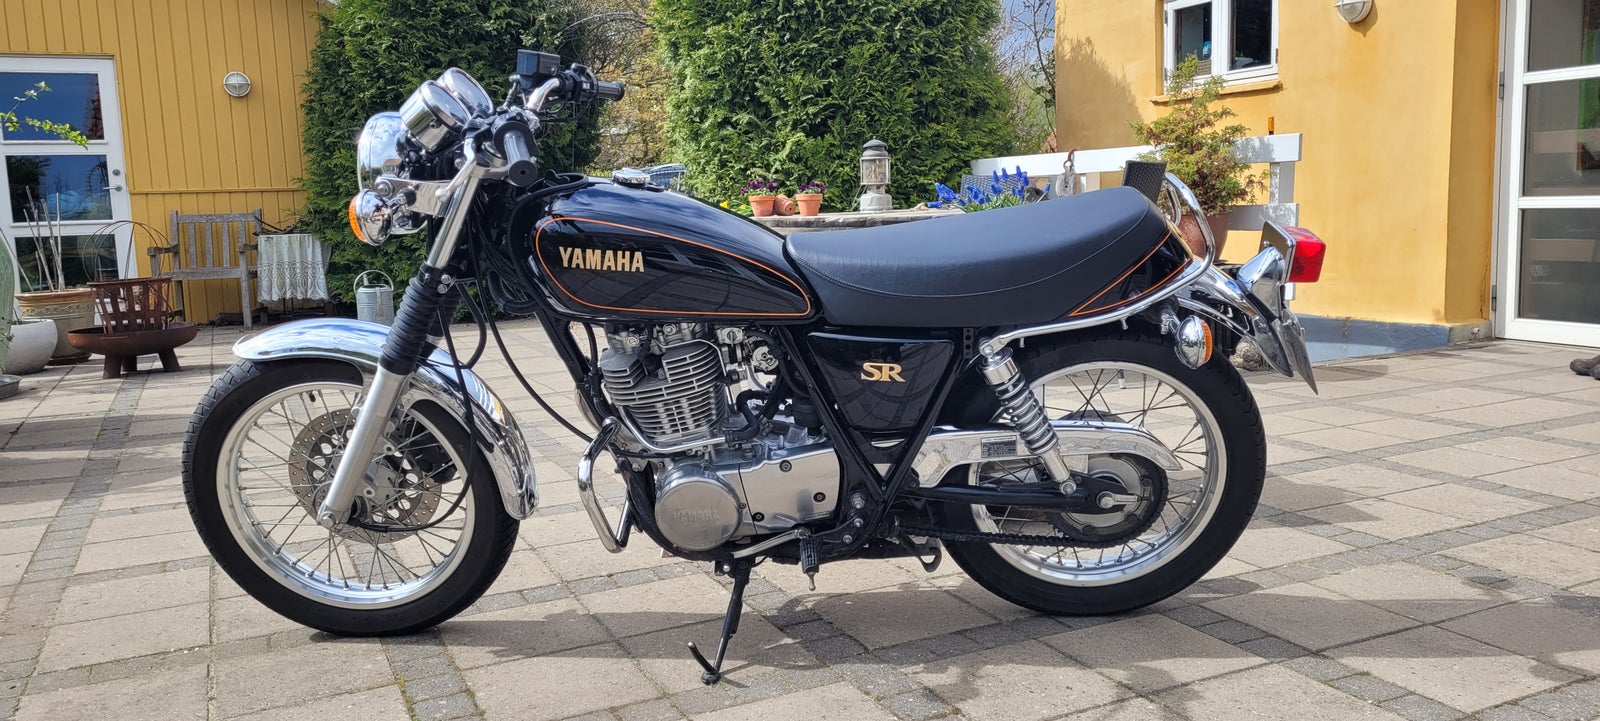 Yamaha, SR 400, 400 ccm